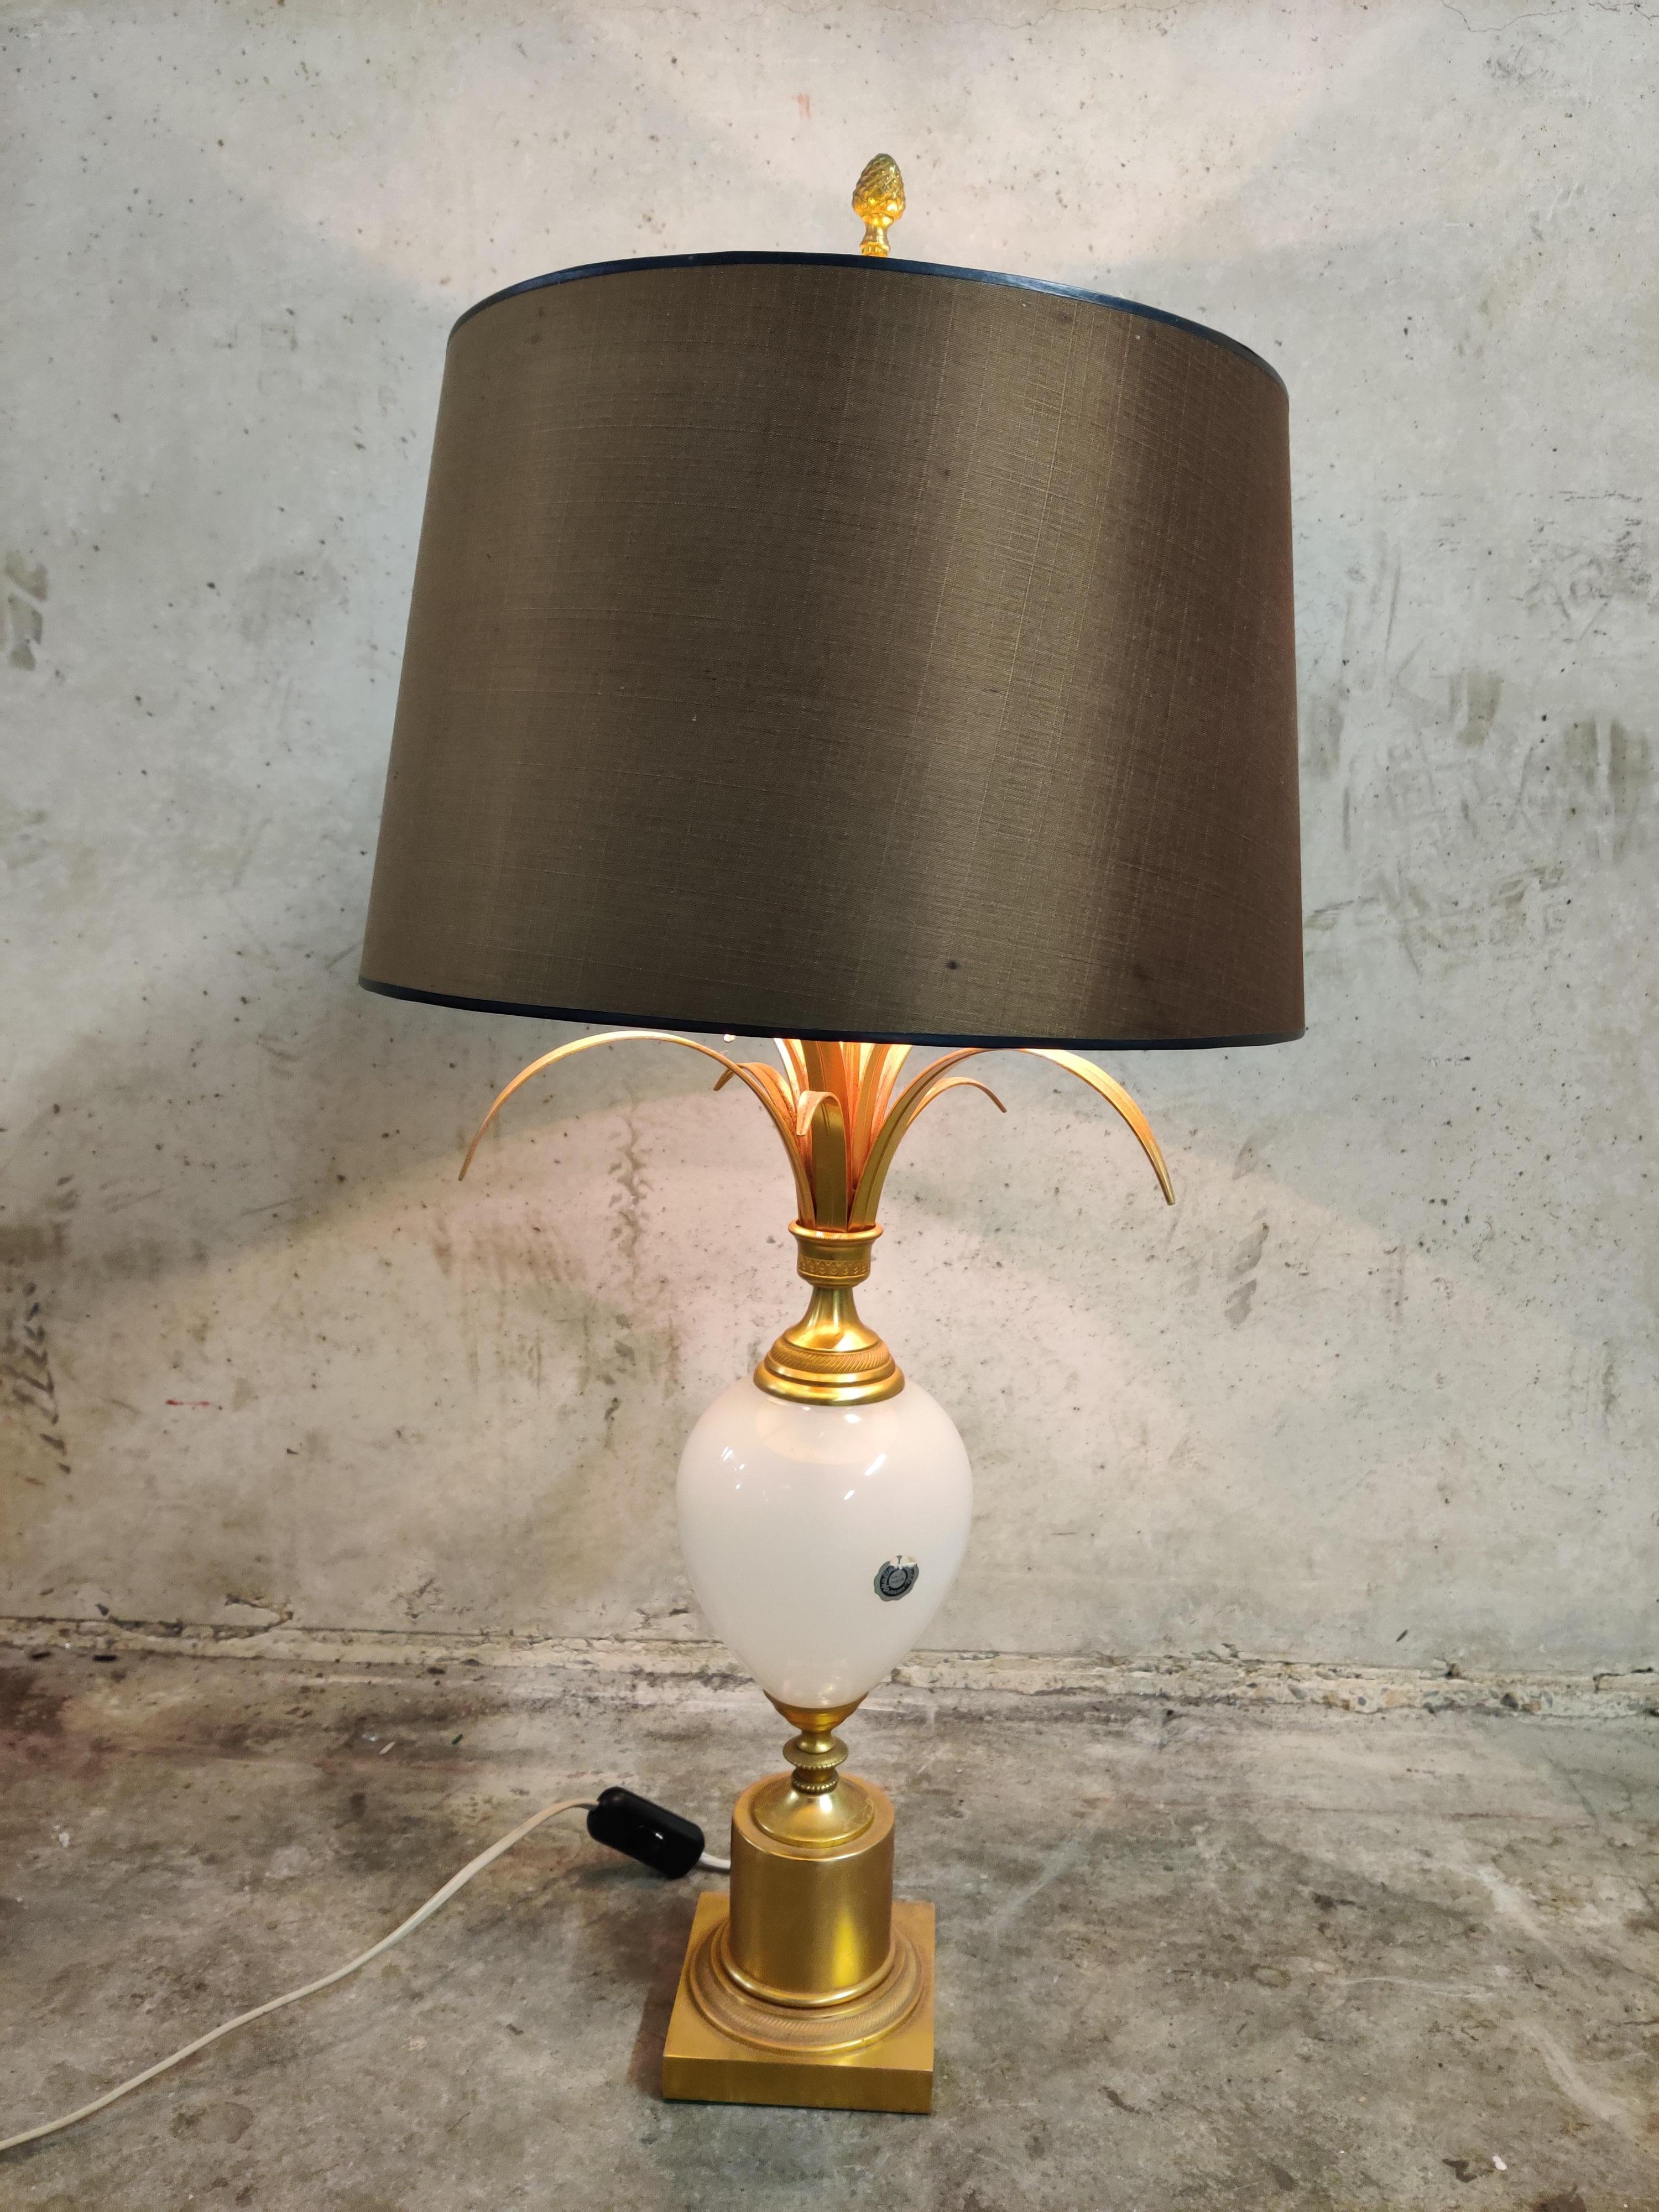 Tischlampe mit Ananasblatt von Boulanger, Maison Charles zugeschrieben, seltenes Modell mit opalem Schirm.

Diese Lampe im Regency-Stil ist auch als 